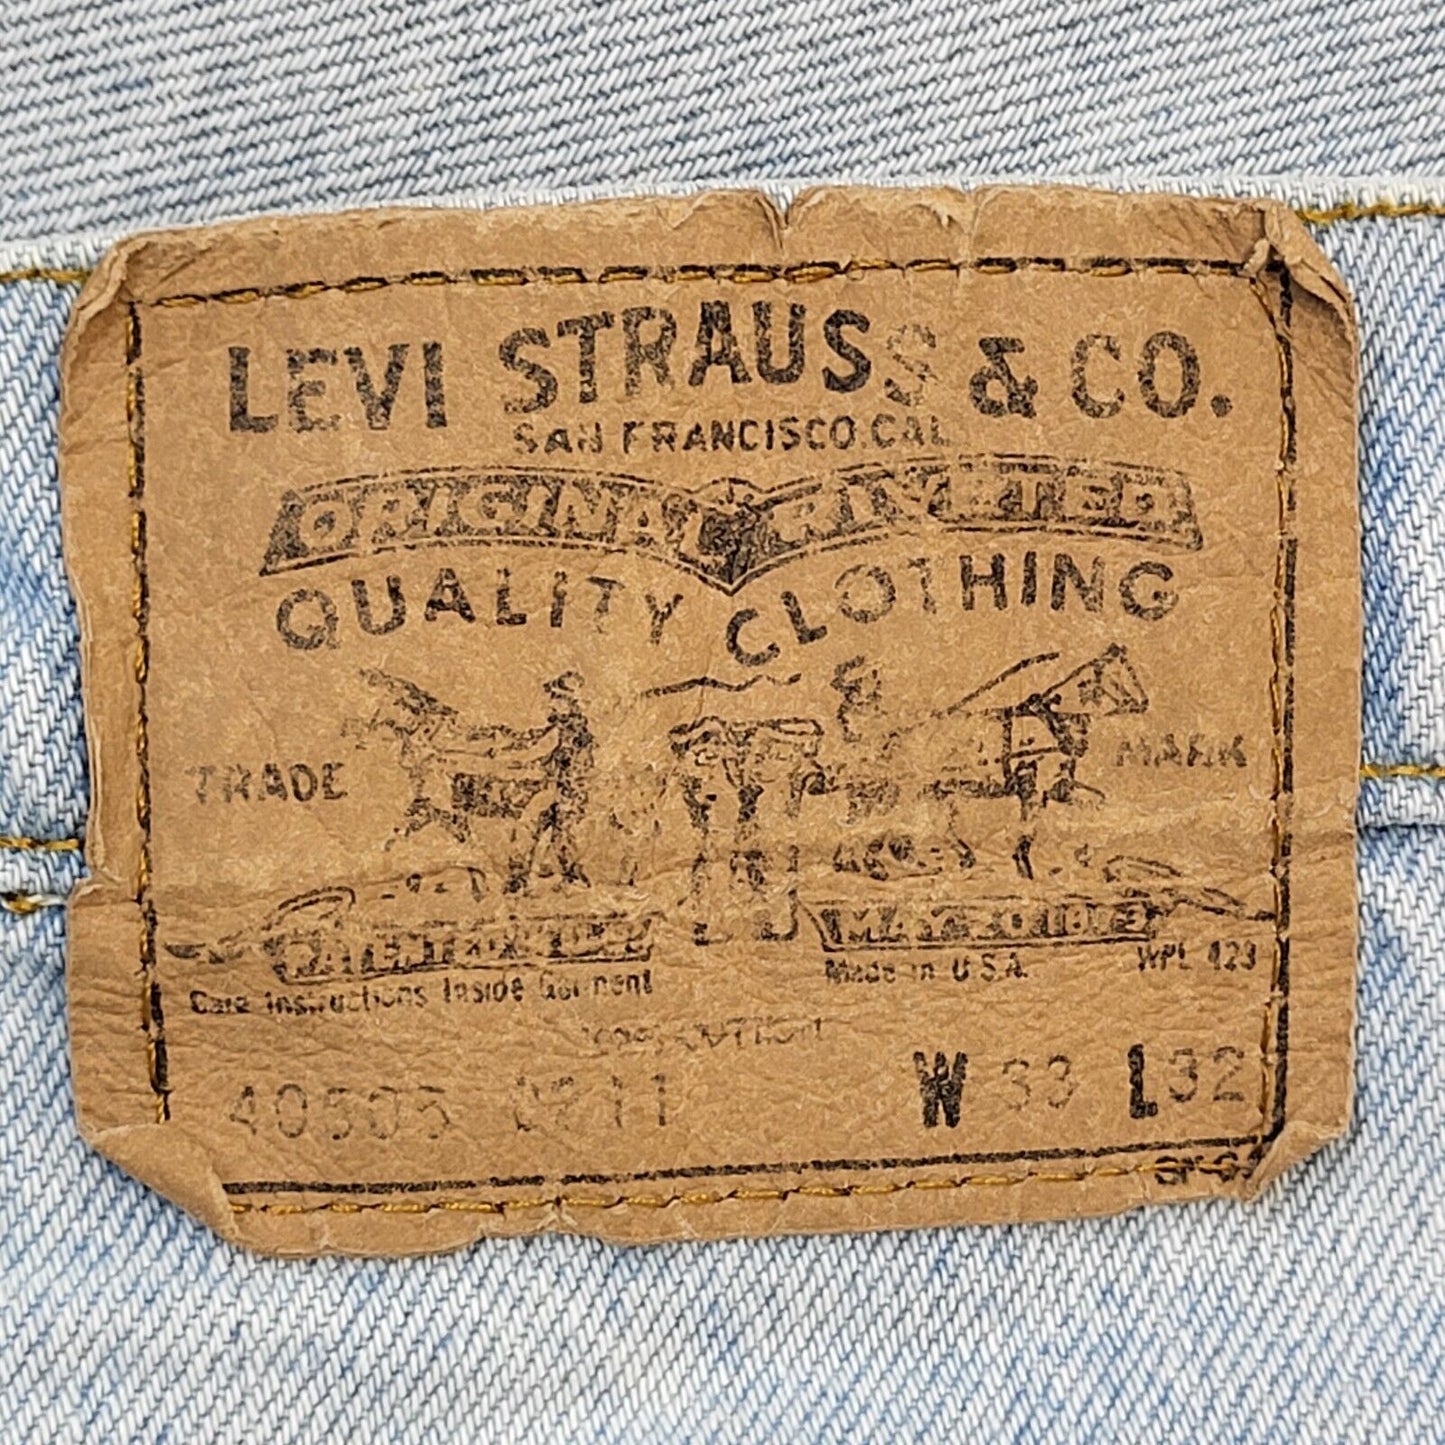 Levi's Jeans (M)